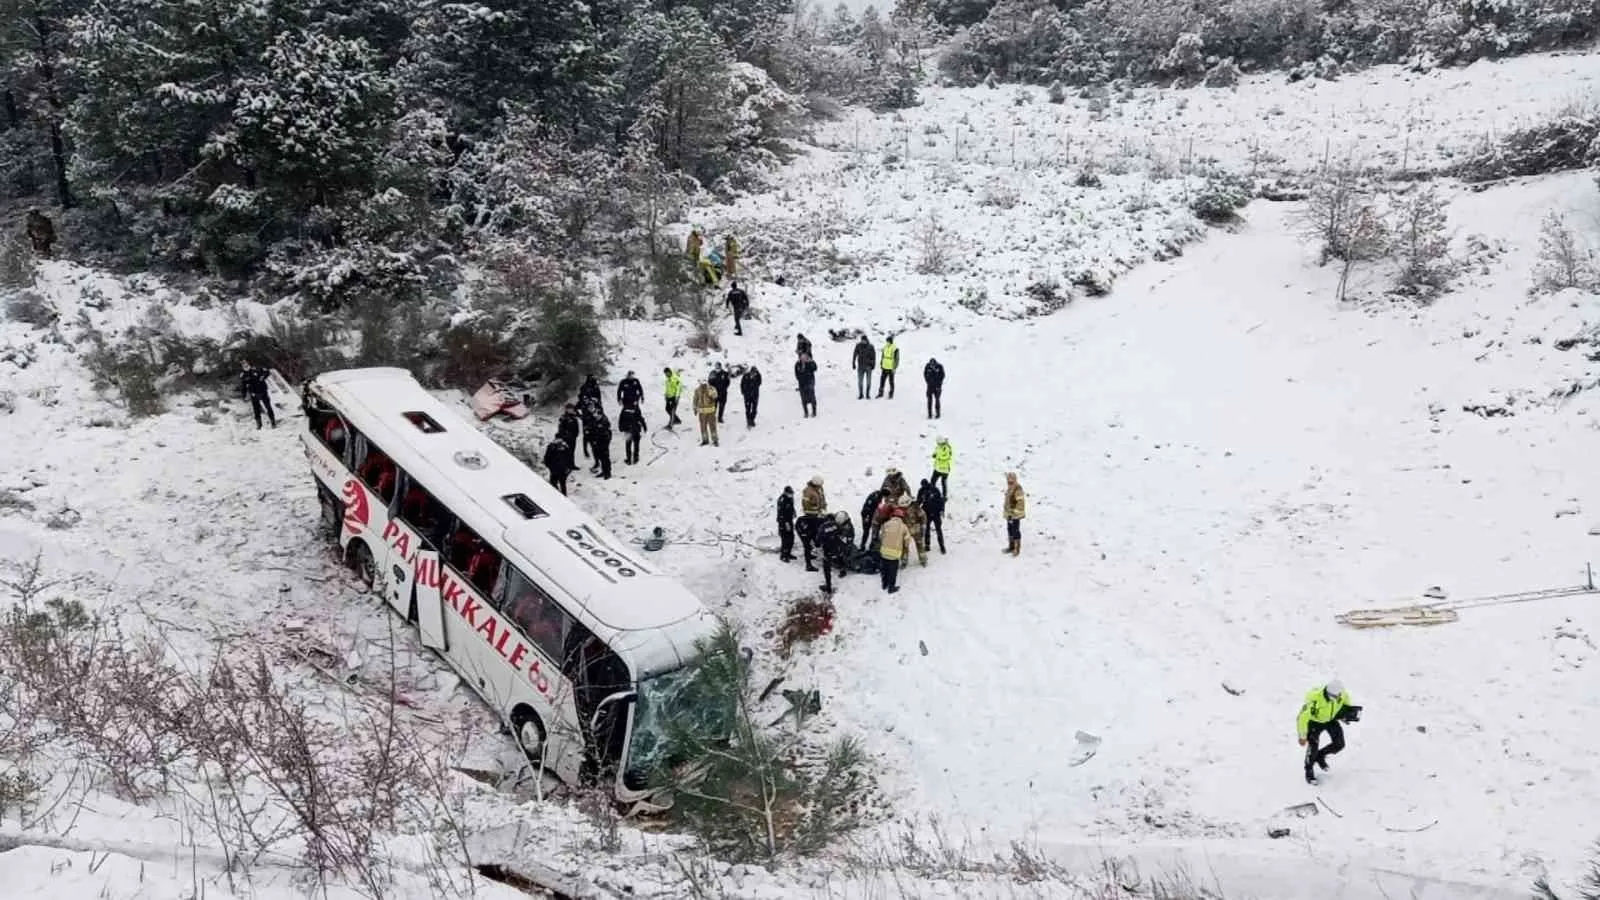 Beykoz Kuzey Çevre Otoyolu’nda yolcu otobüsü şarampole devrildi. Olay yerine çok sayıda sağlık ekibi sevk edildi. #istanbul